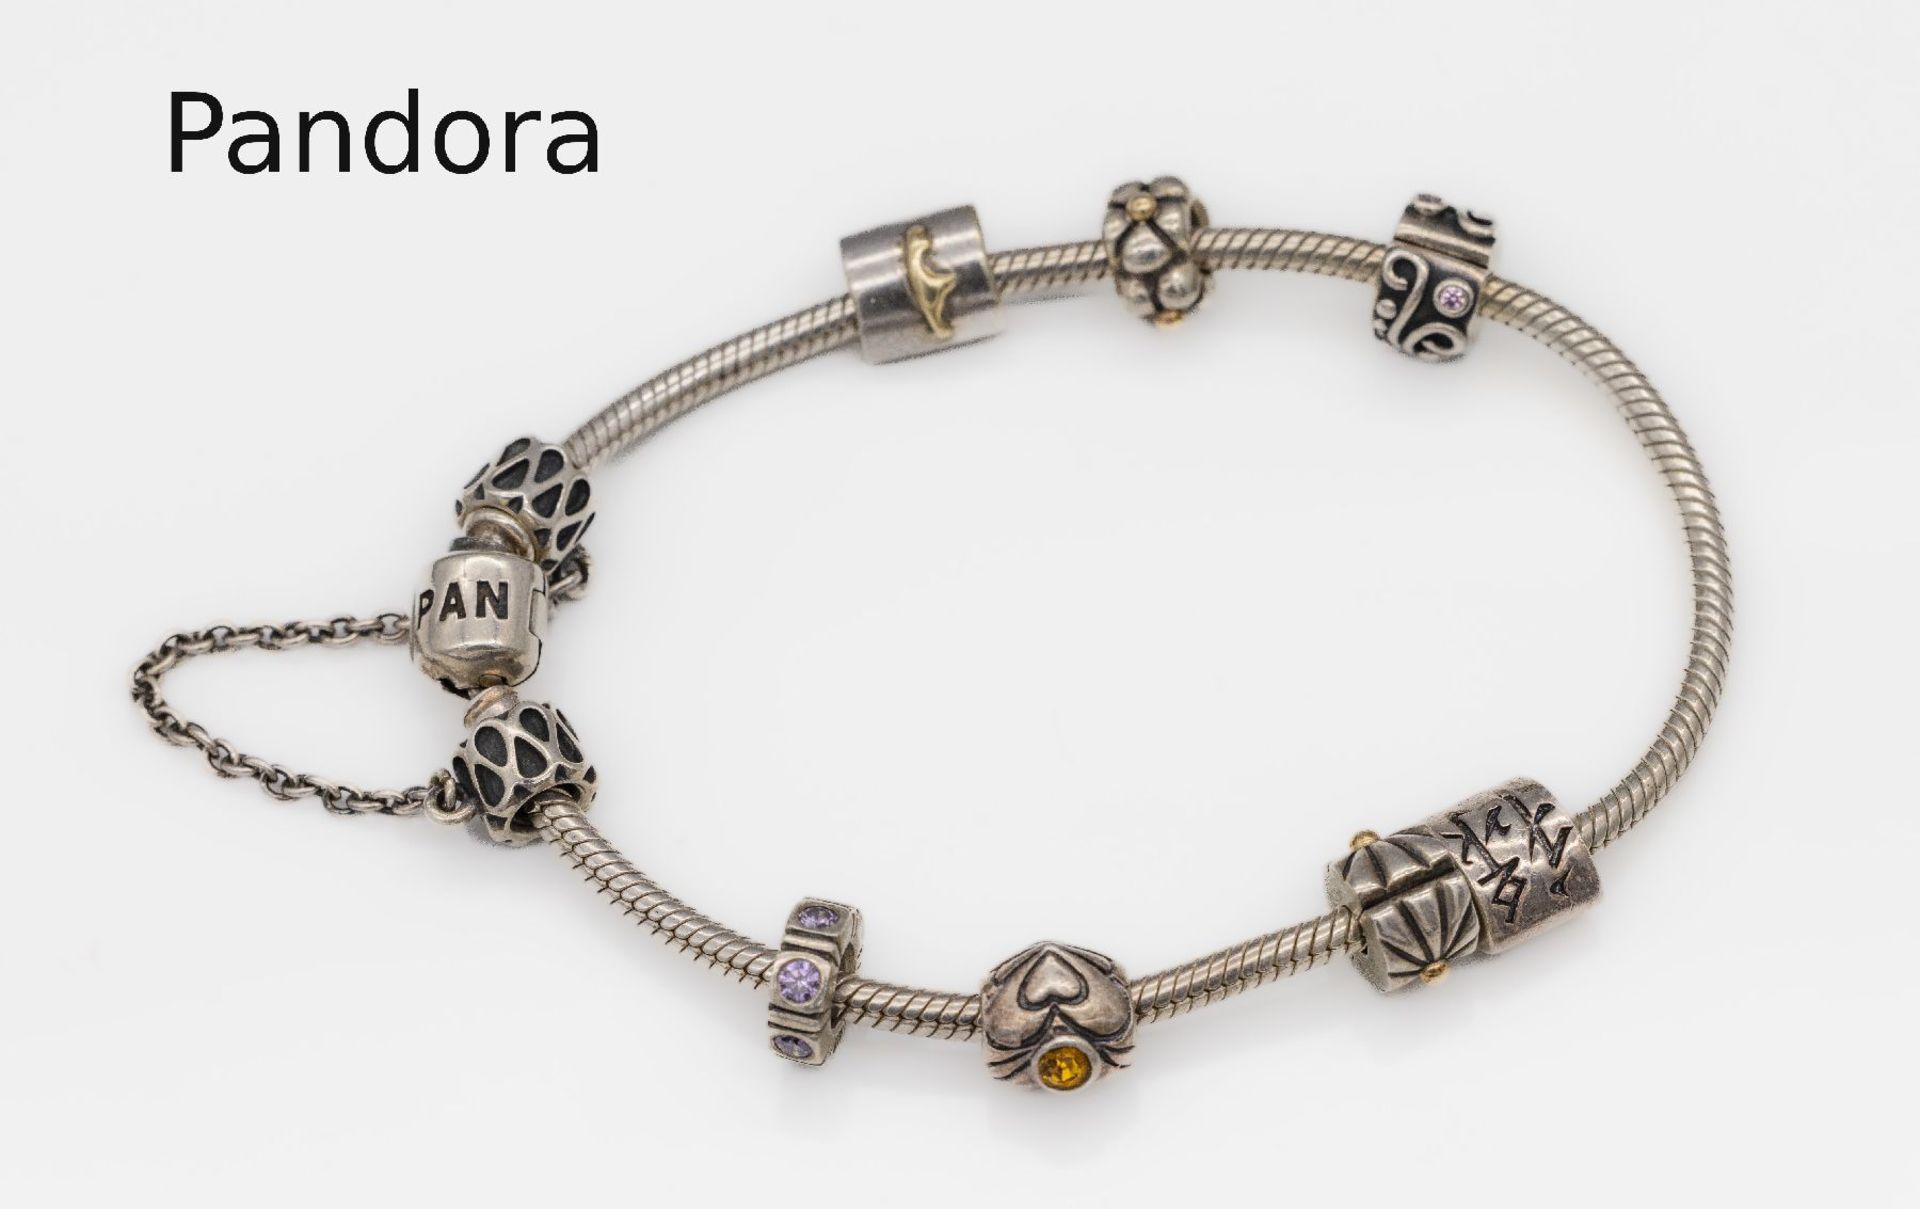 PANDORA Armband mit 9 Charms, Silber,   3 Charms mit GG, 1